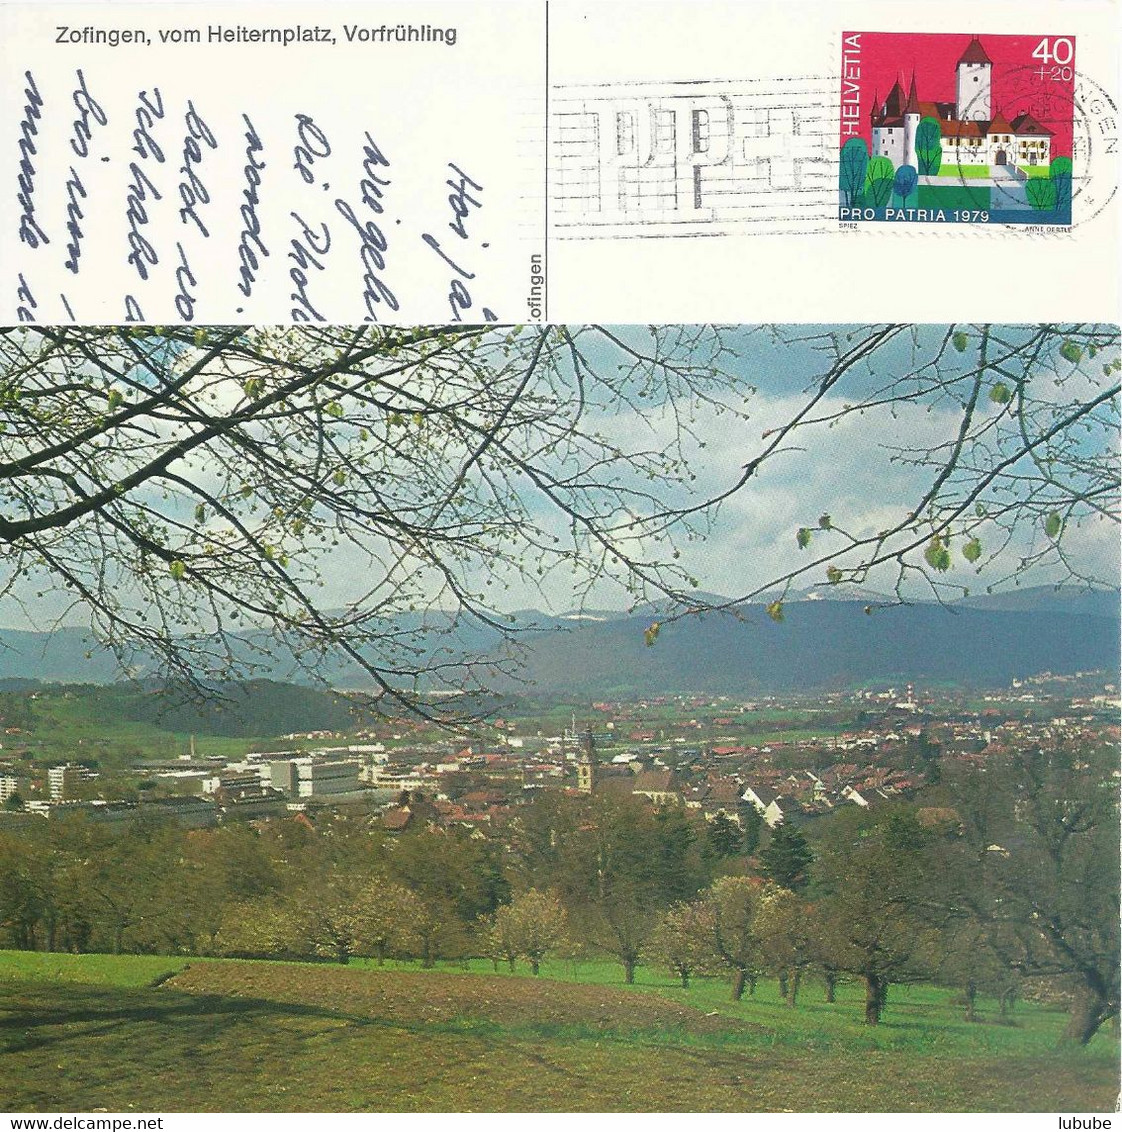 Zofingen - Blick Vom Heiternplatz Im Vorfrühling           Ca. 1970 - Zofingen